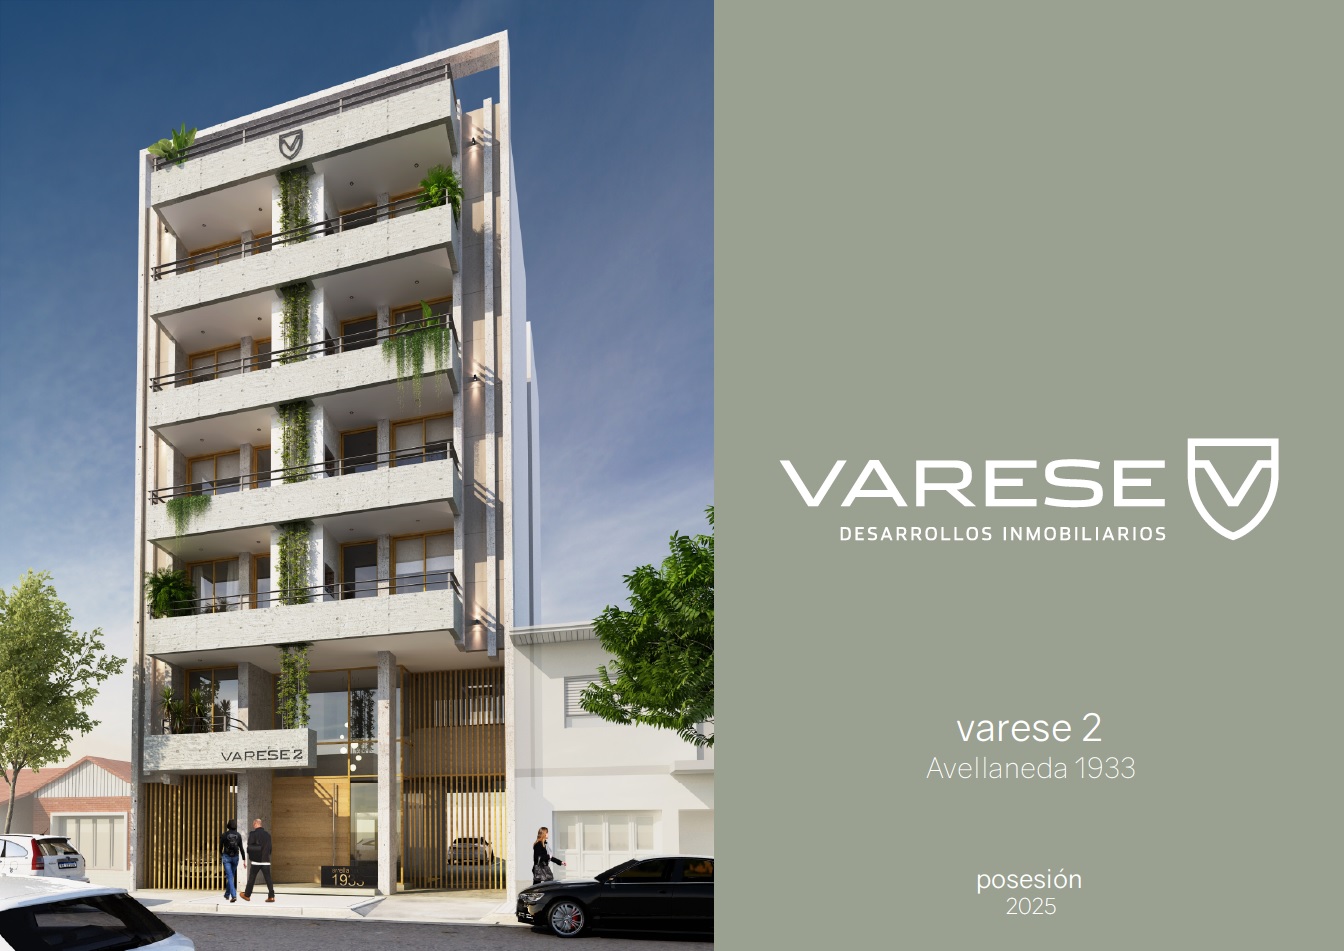 En venta. Edificio Varese II. Departamentos de 1,2,3 y 4 ambientes. Posibilidad de terrazas propias. Zona Chauvin 